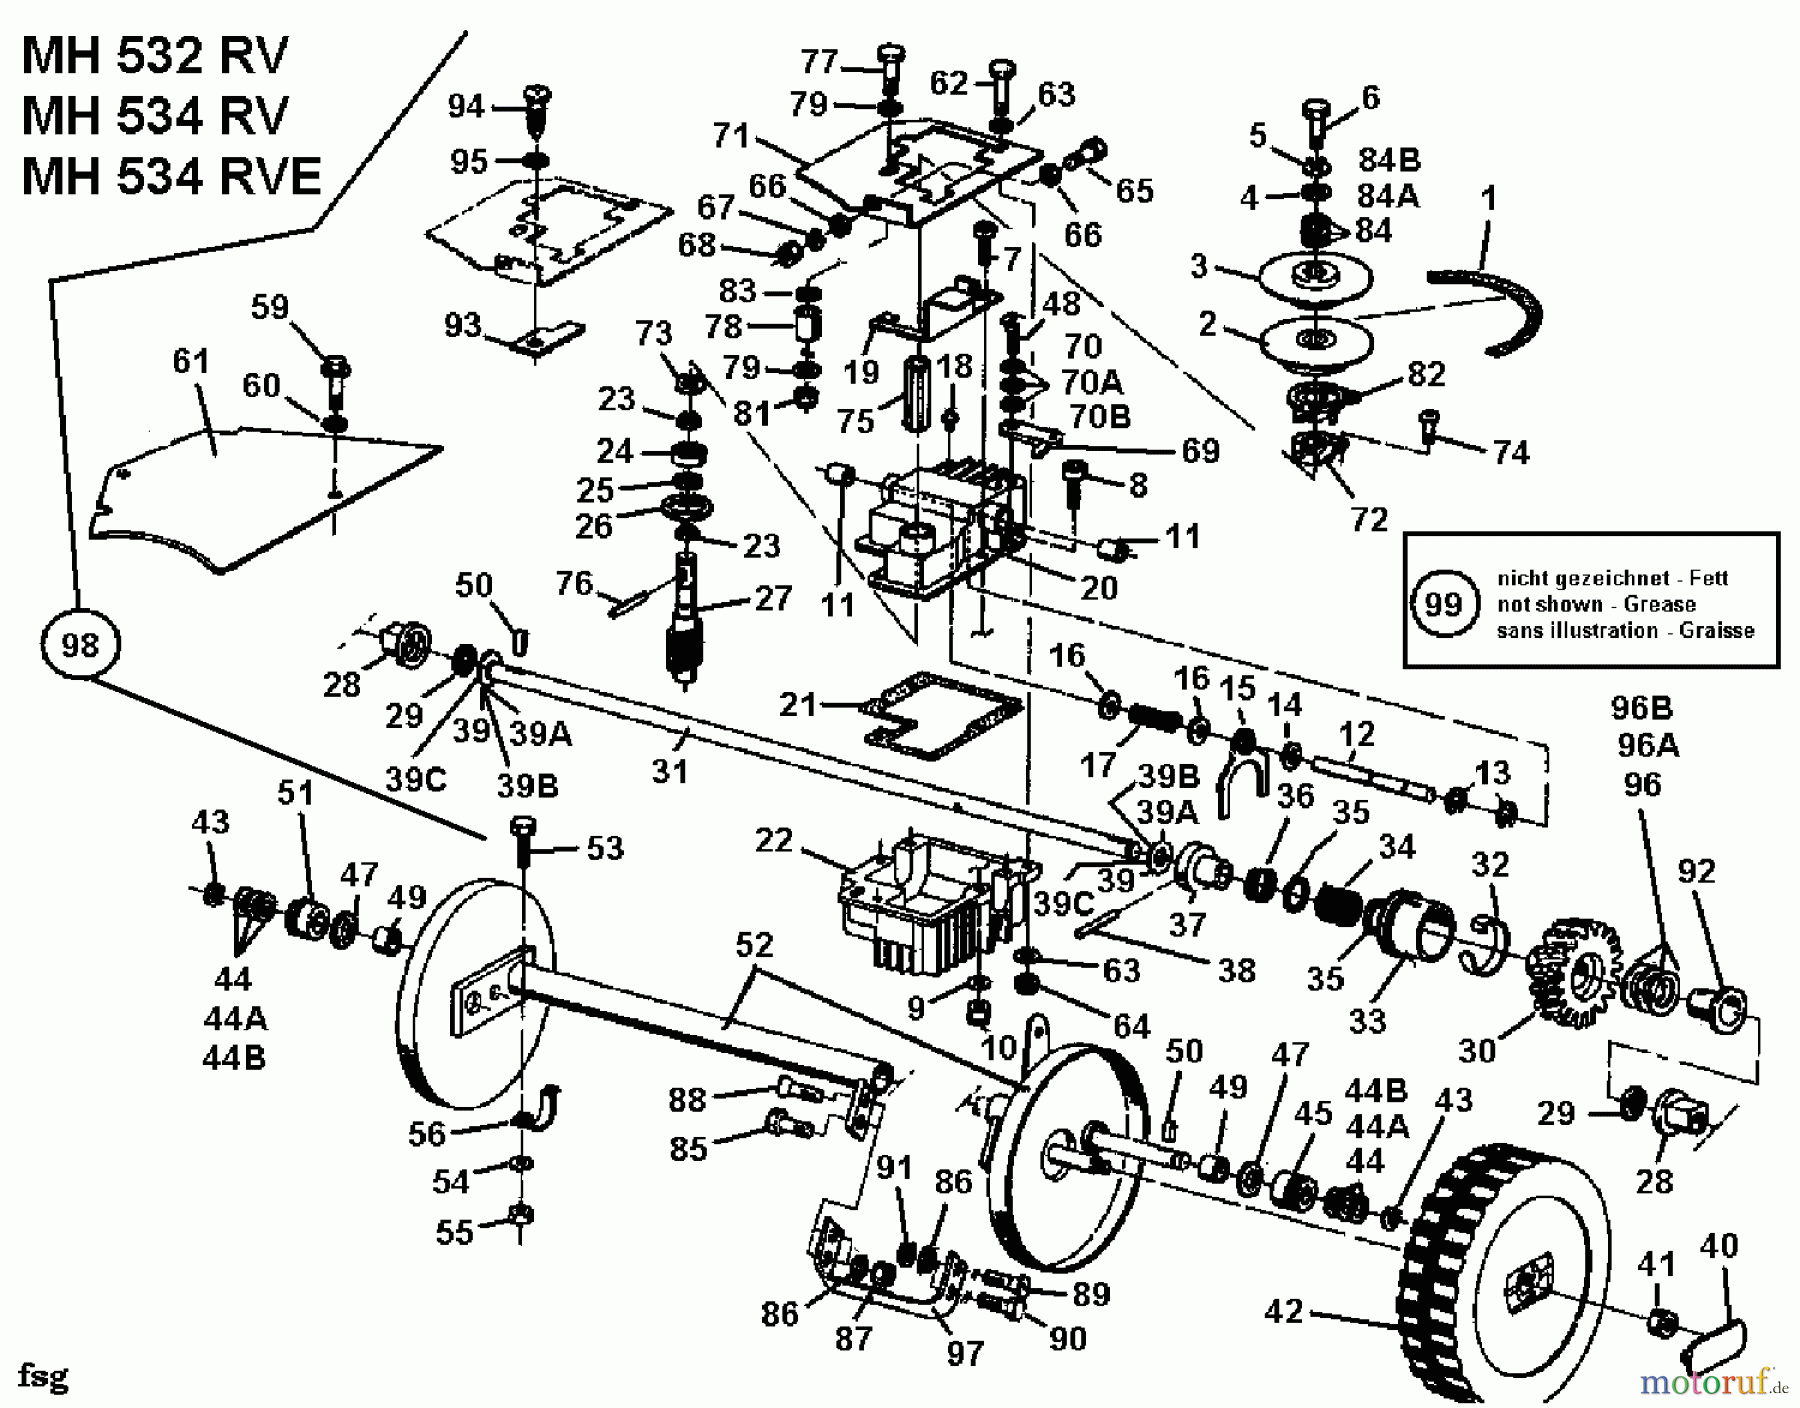  Gutbrod Motormäher mit Antrieb MH 534 RVE 04007.03  (1994) Getriebe, Räder